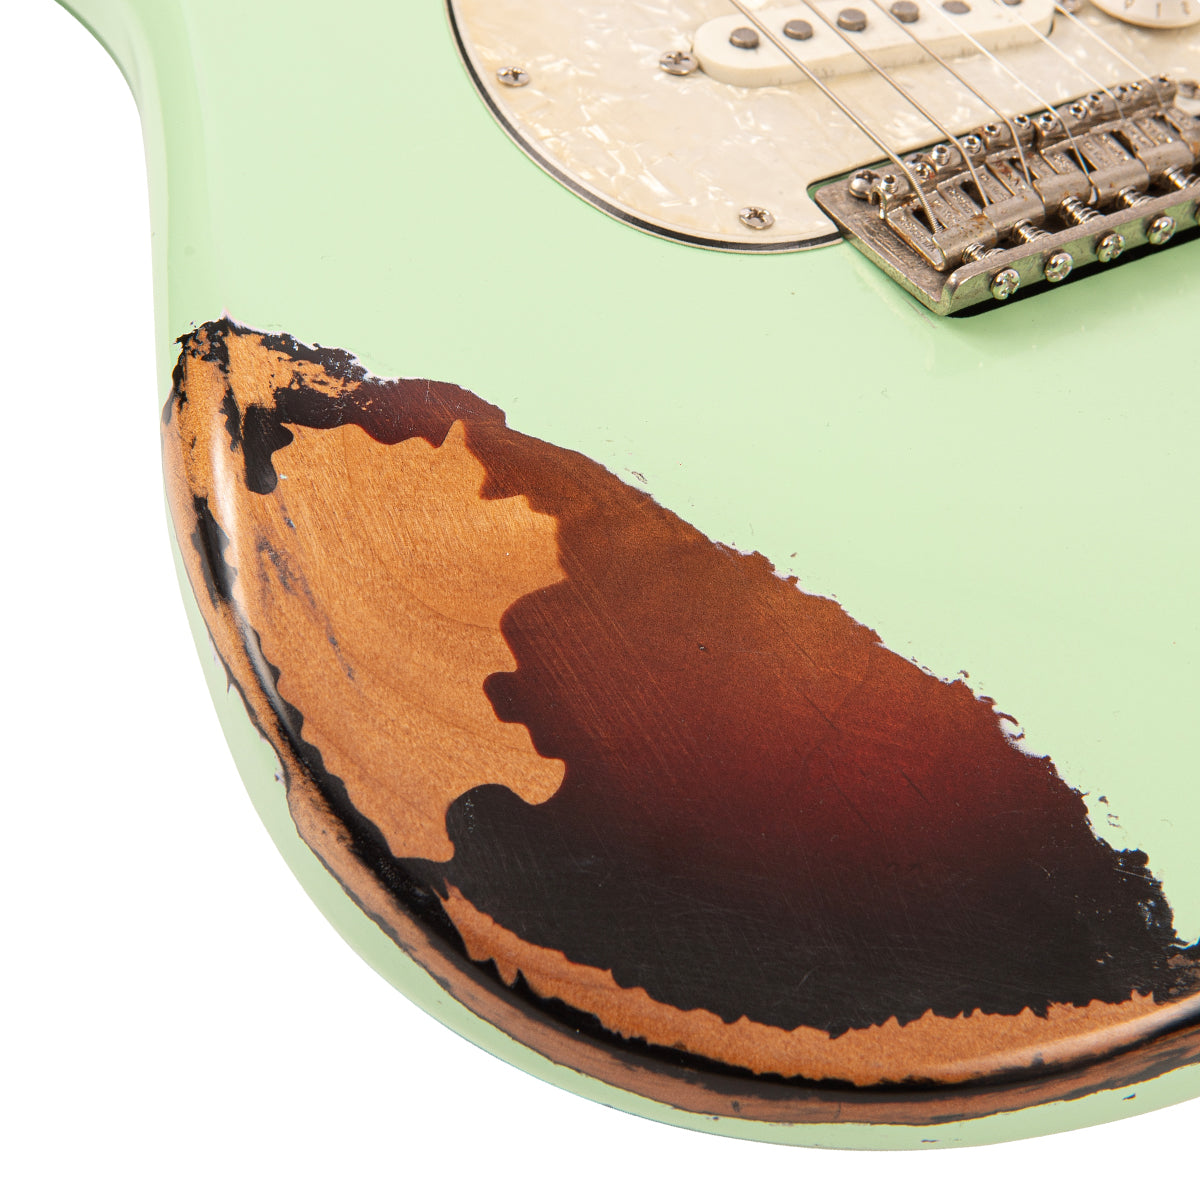 SOLD - Vintage V6 ProShop Custom Build ~ Surf Green, Electrics for sale at Richards Guitars.